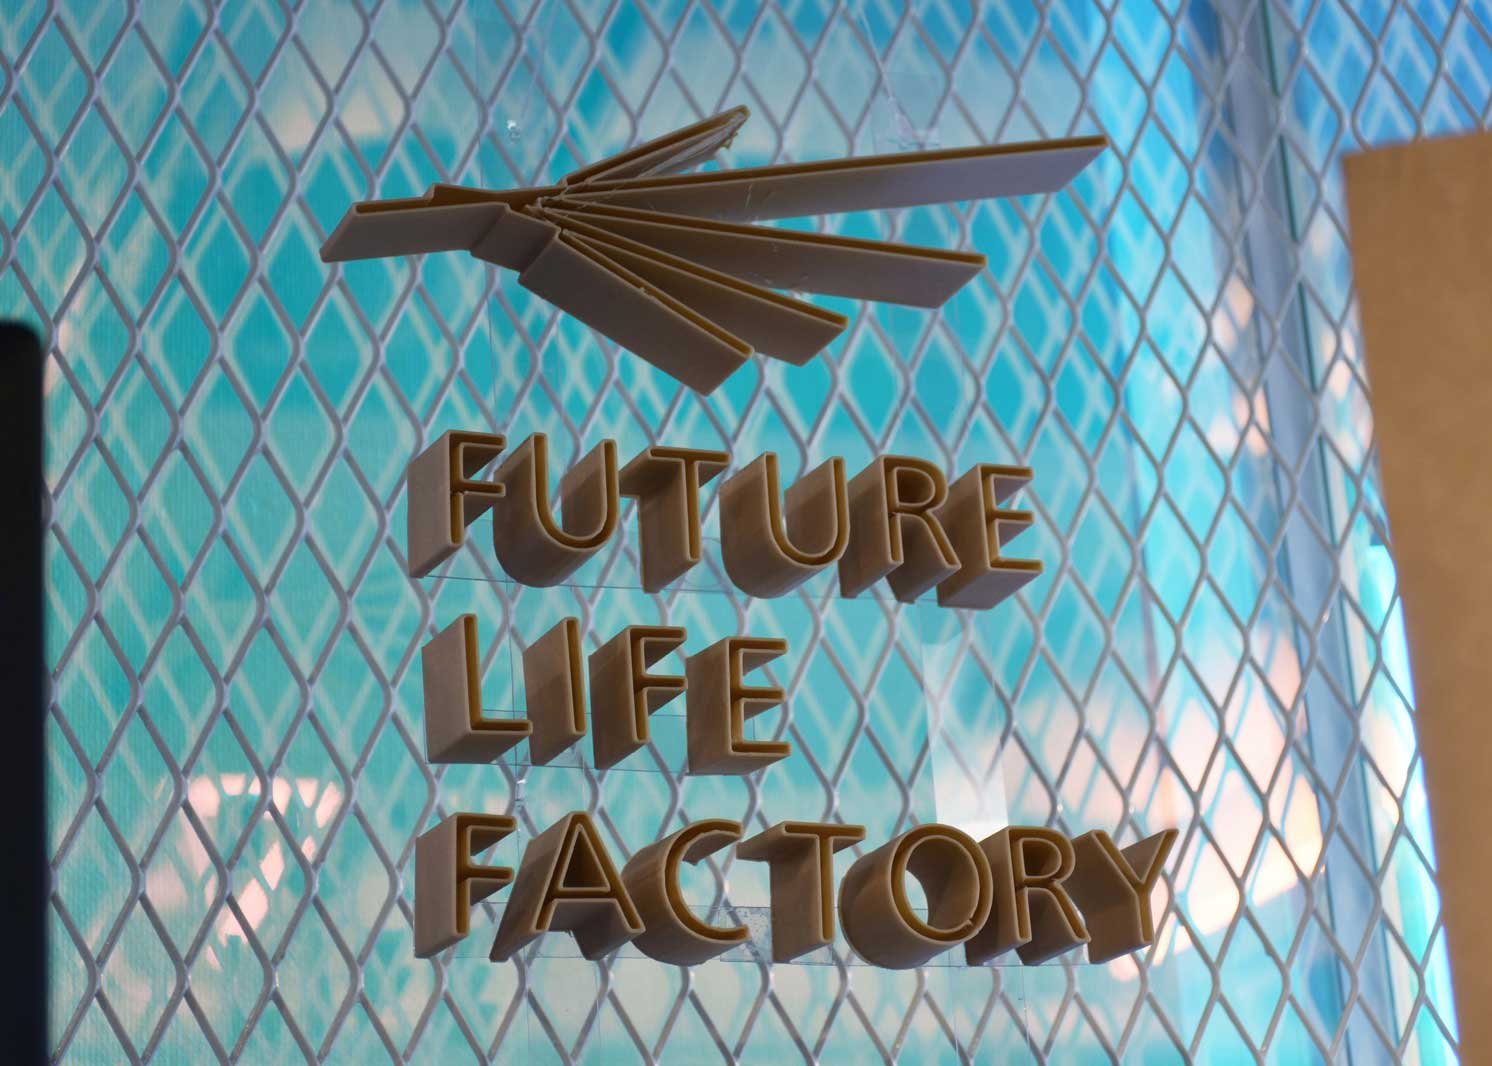 FUTURE LIFE FACTORYのロゴ| Make New Magazine「未来の定番」をつくるために、パナソニックのリアルな姿を伝えるメディア